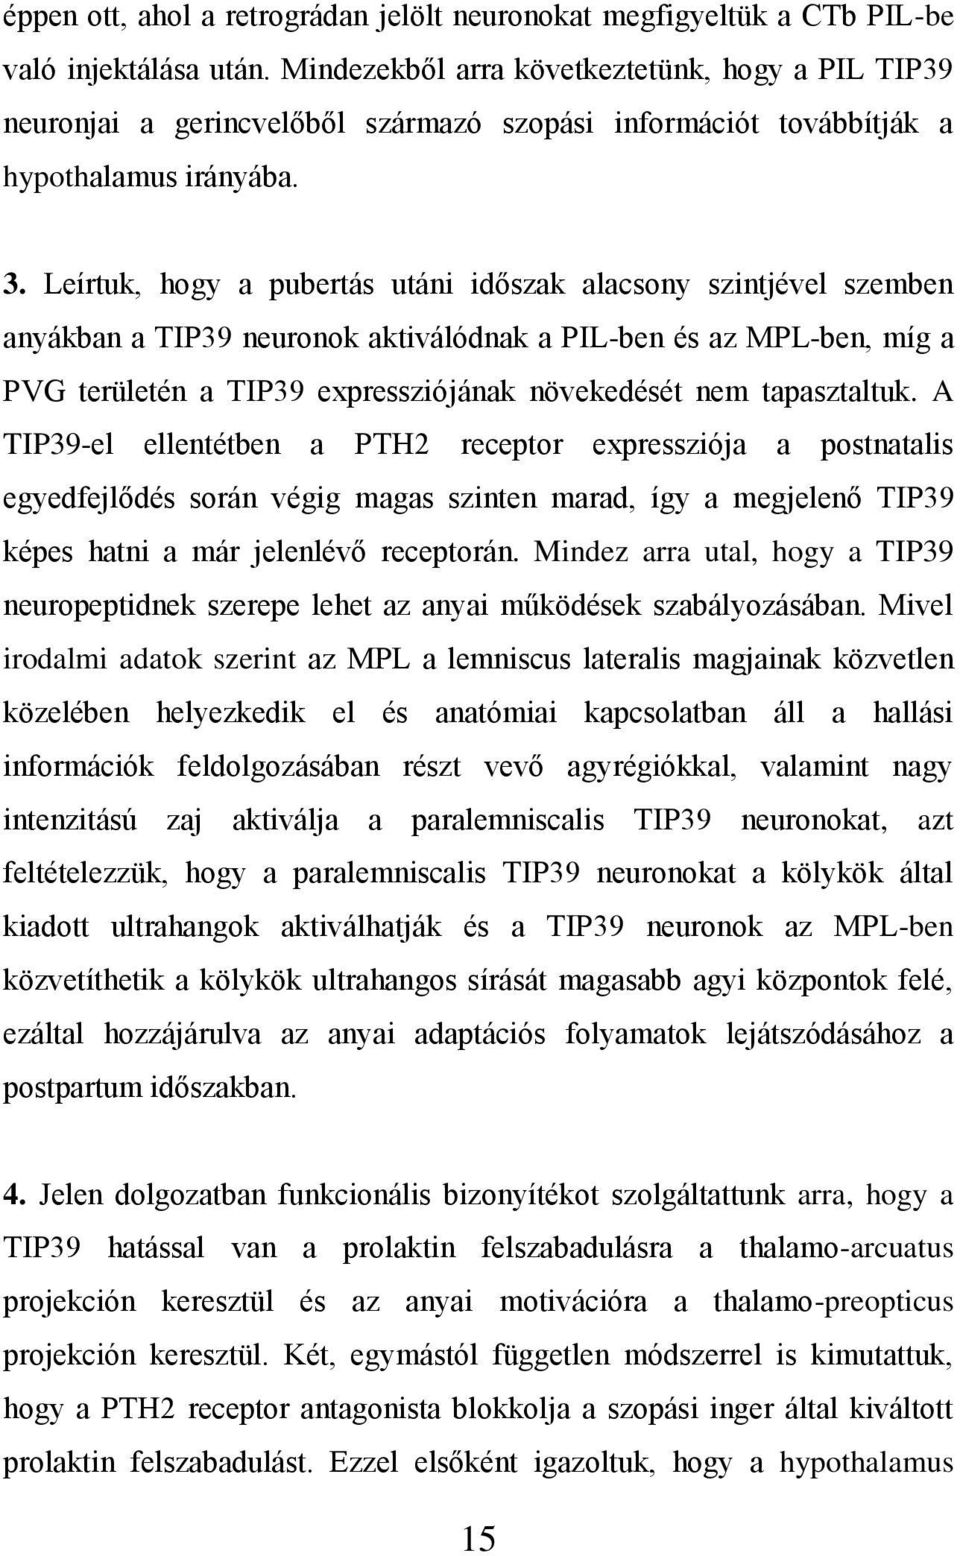 Leírtuk, hogy a pubertás utáni időszak alacsony szintjével szemben anyákban a TIP39 neuronok aktiválódnak a PIL-ben és az MPL-ben, míg a PVG területén a TIP39 expressziójának növekedését nem